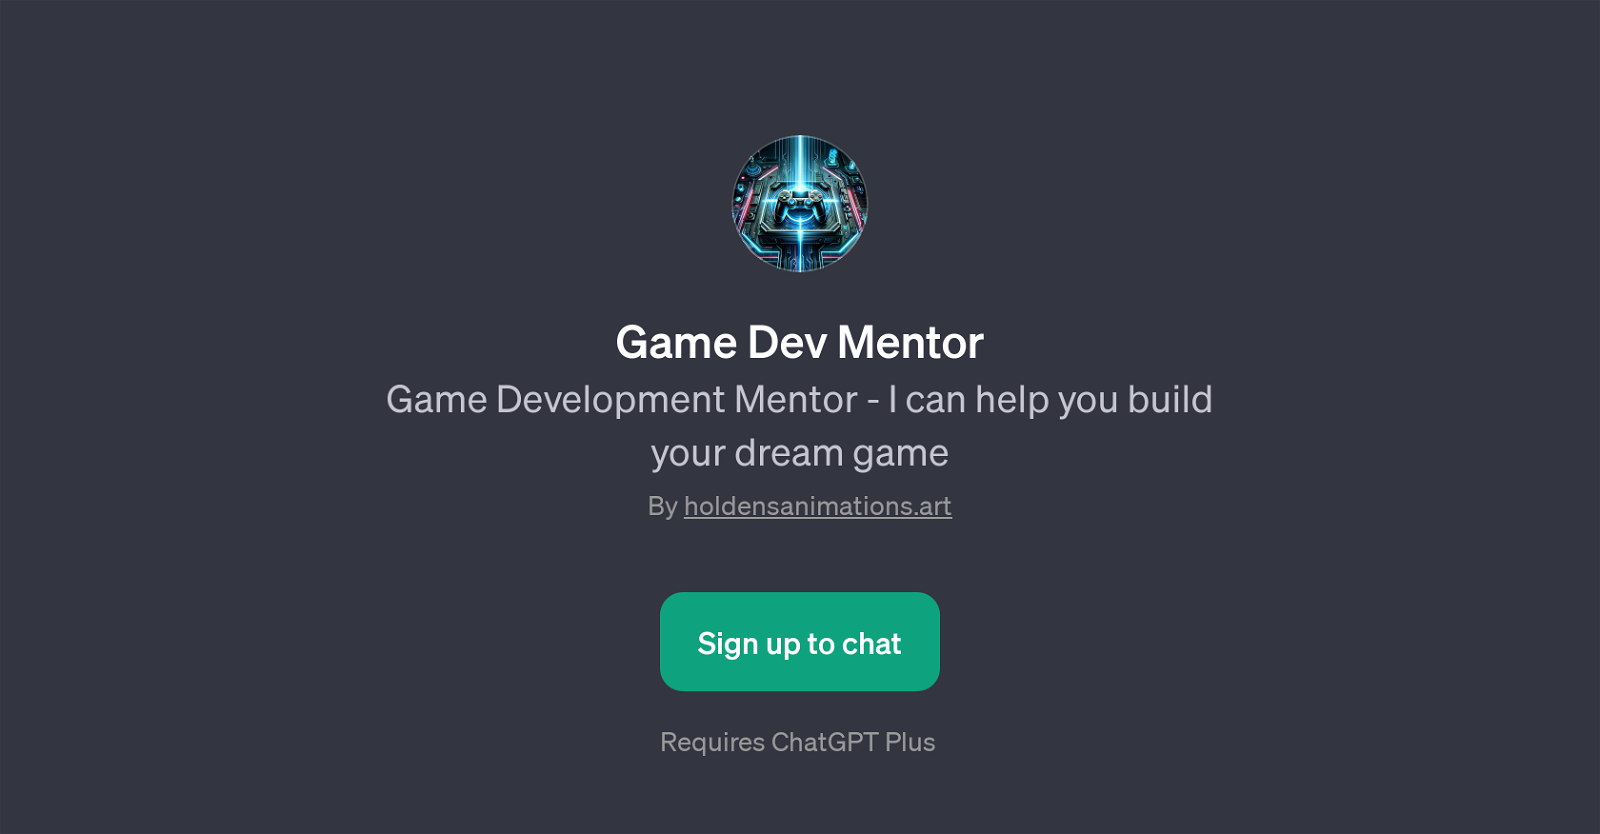 Game Dev Mentor website